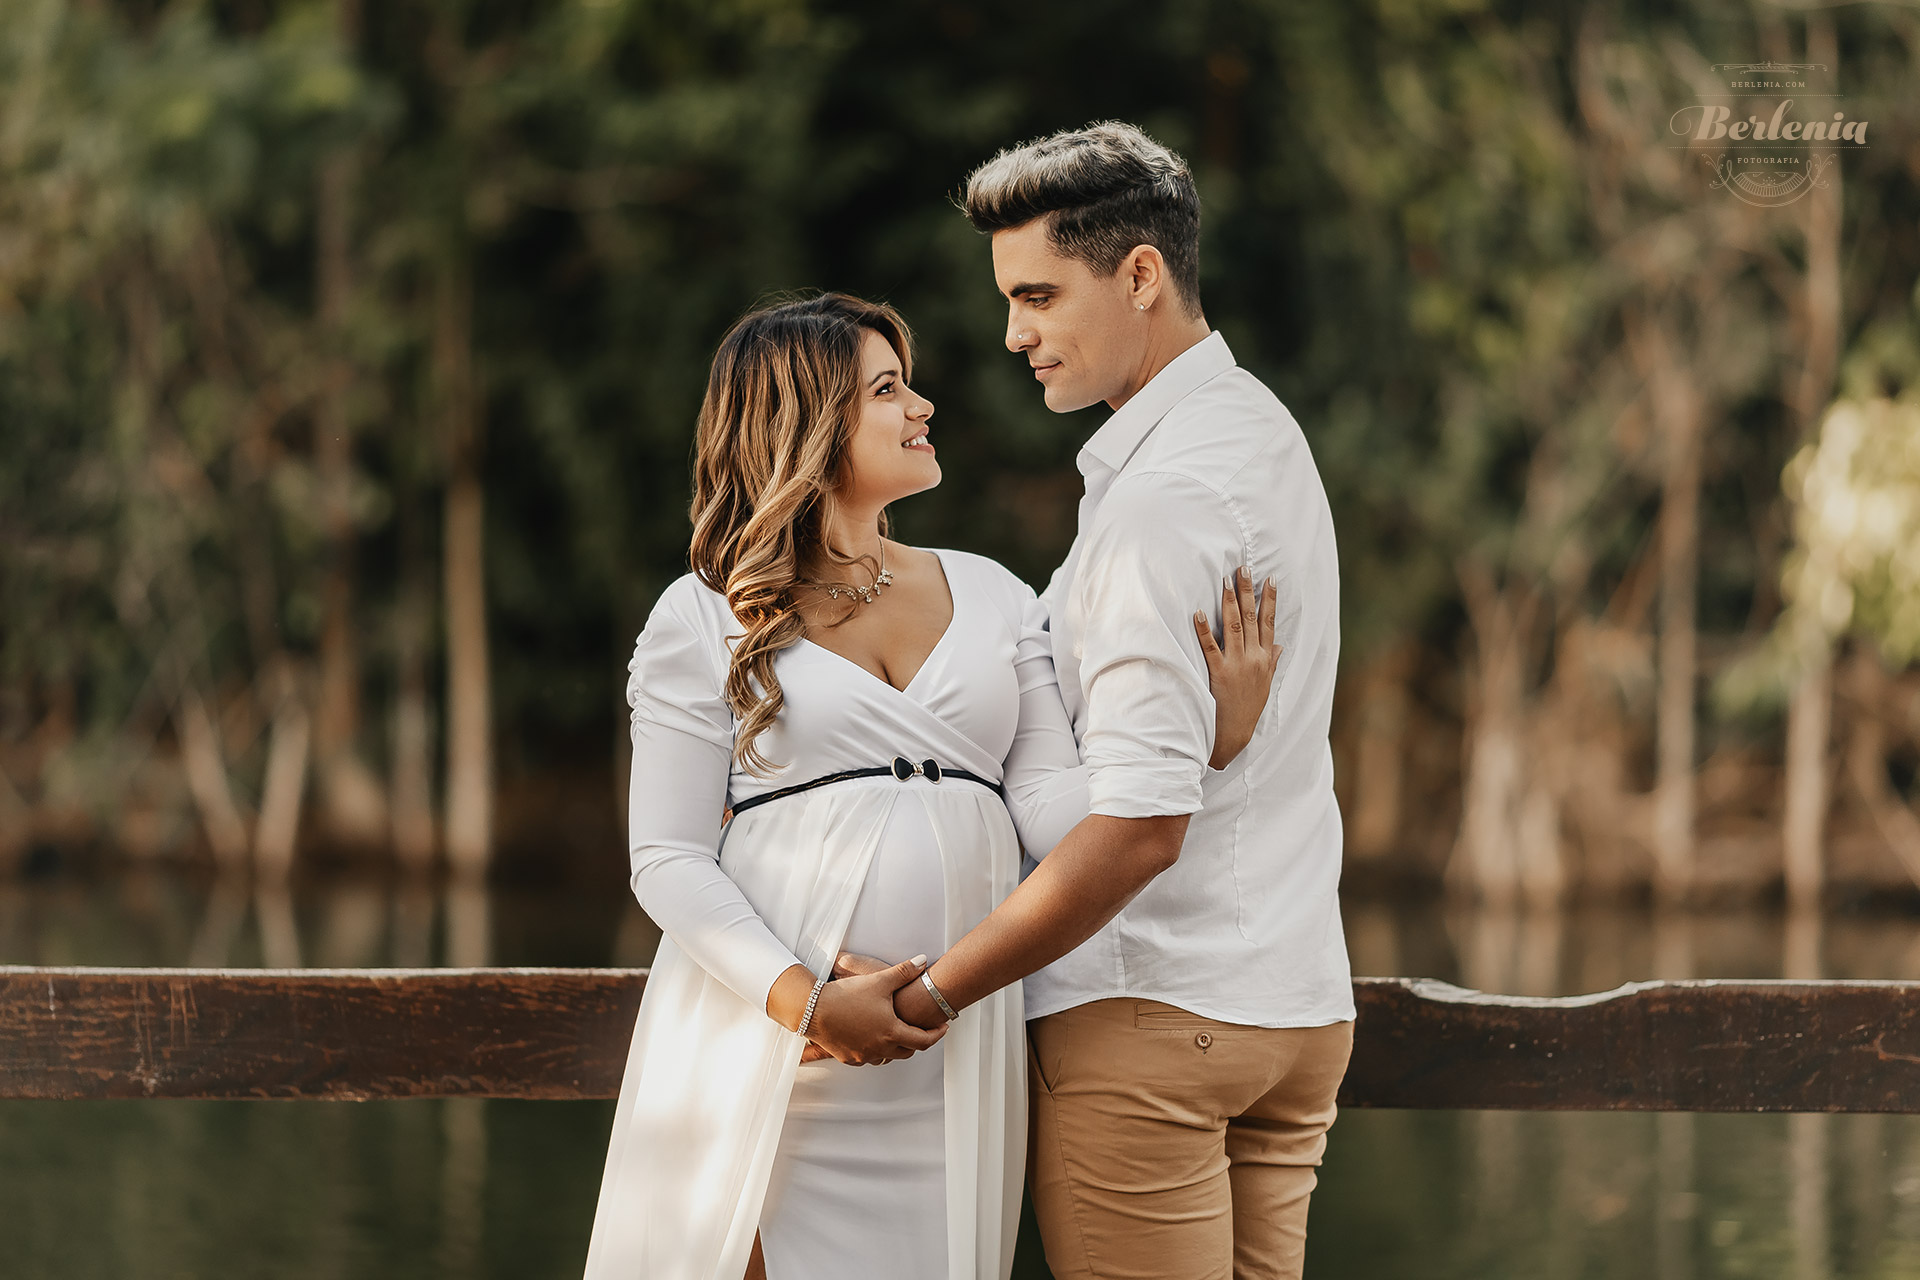 Fotografía de embarazo en pareja en Lago de Regatas, Palermo - Sesión de fotos embarazada en exterior - CABA, Buenos Aires, Argentina - Berlenia Fotografía - 04